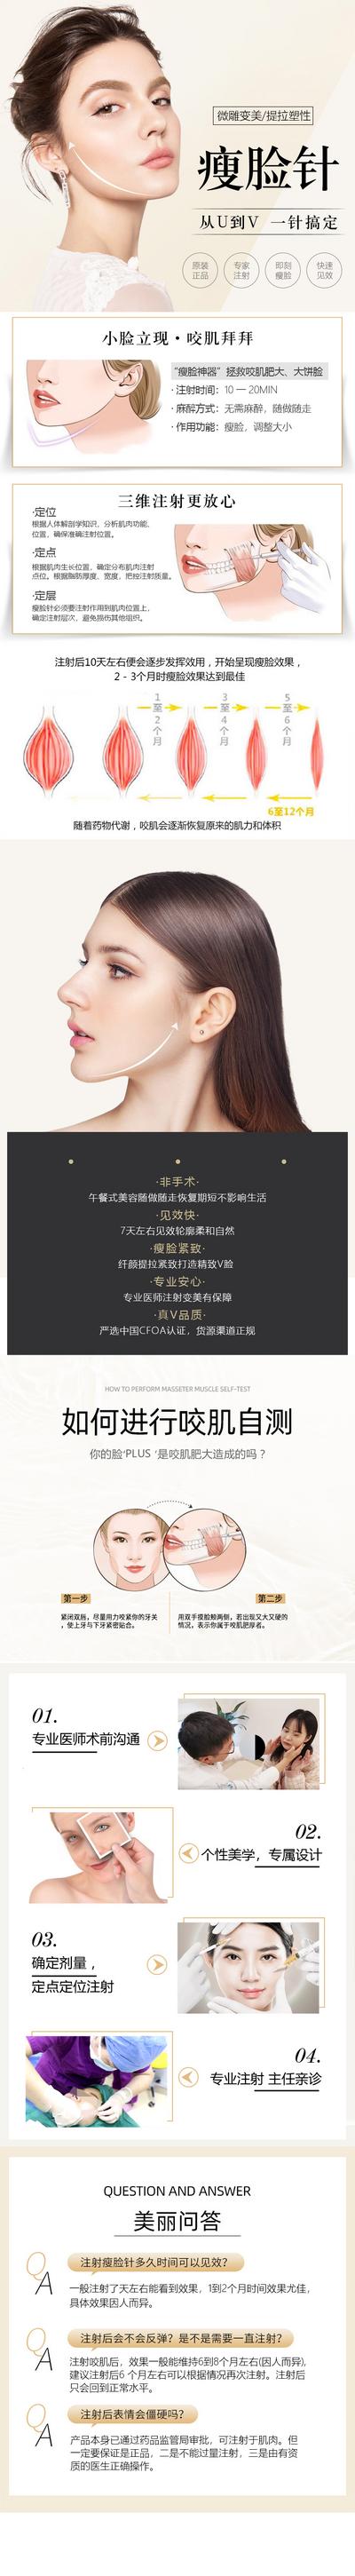 南门网 广告 海报 医美 人物 瘦脸针 长图 专题 促销